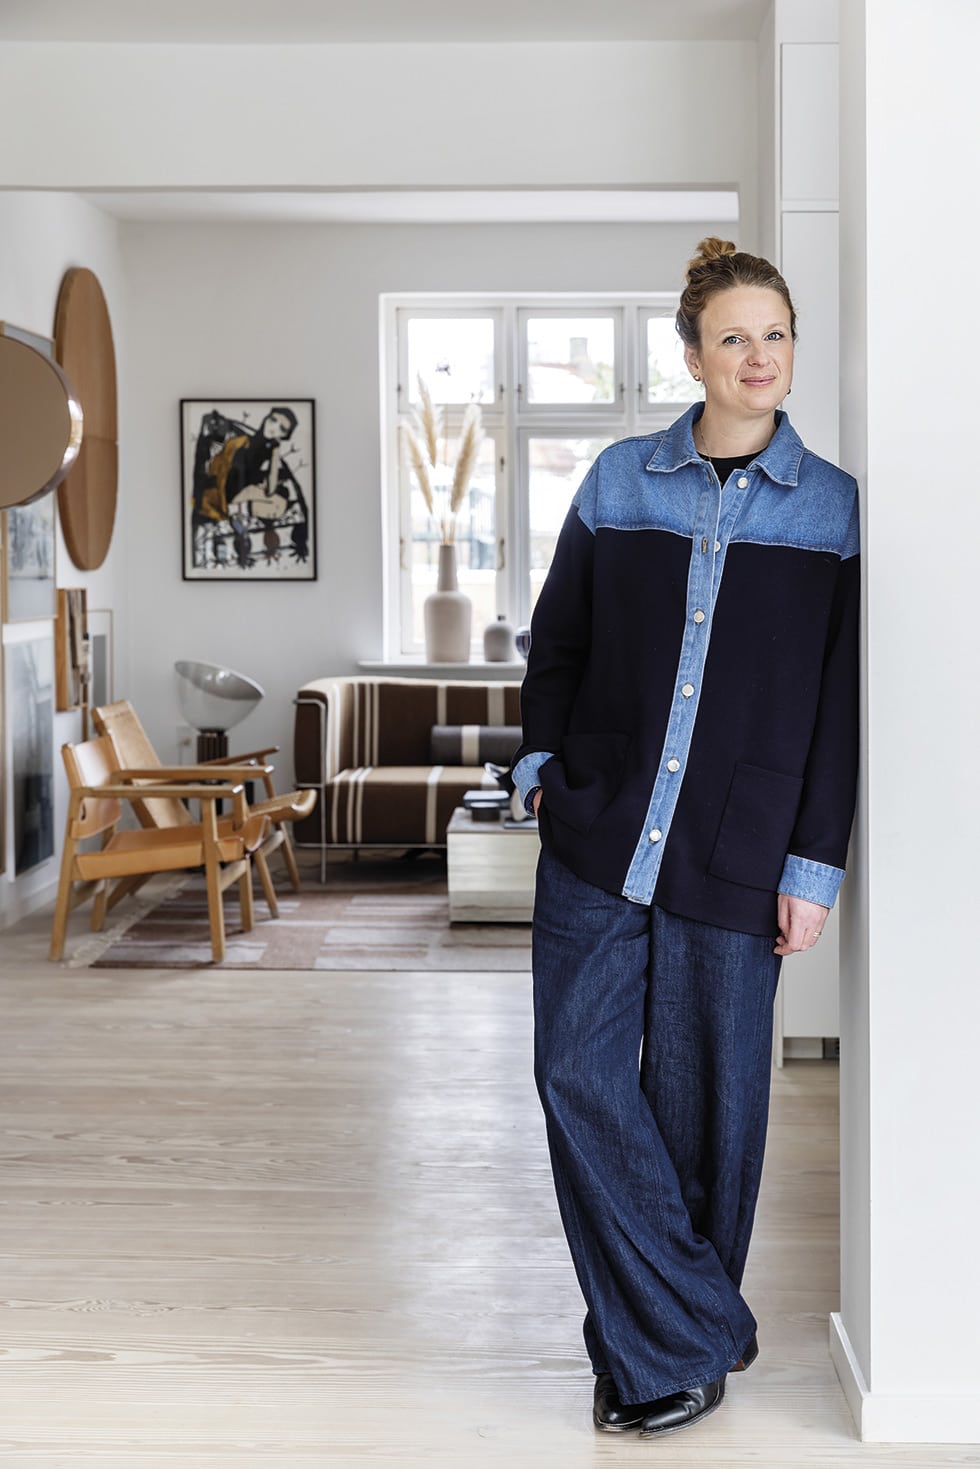 At home in Copenhagen with designer Kristina Dam